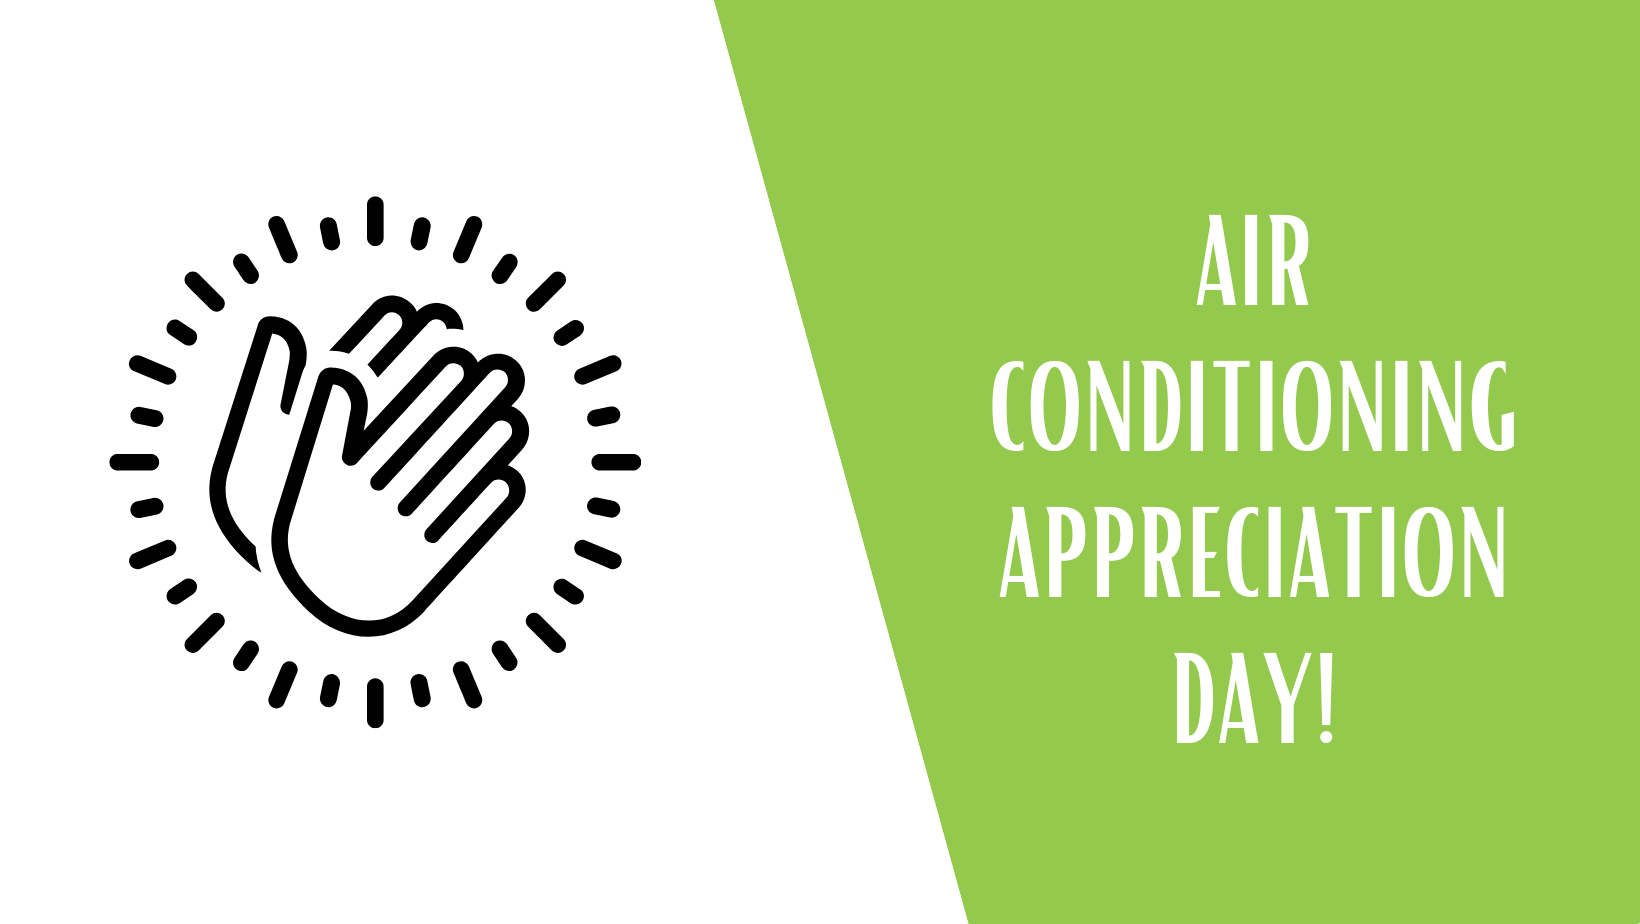 Air conditioning appreciation day